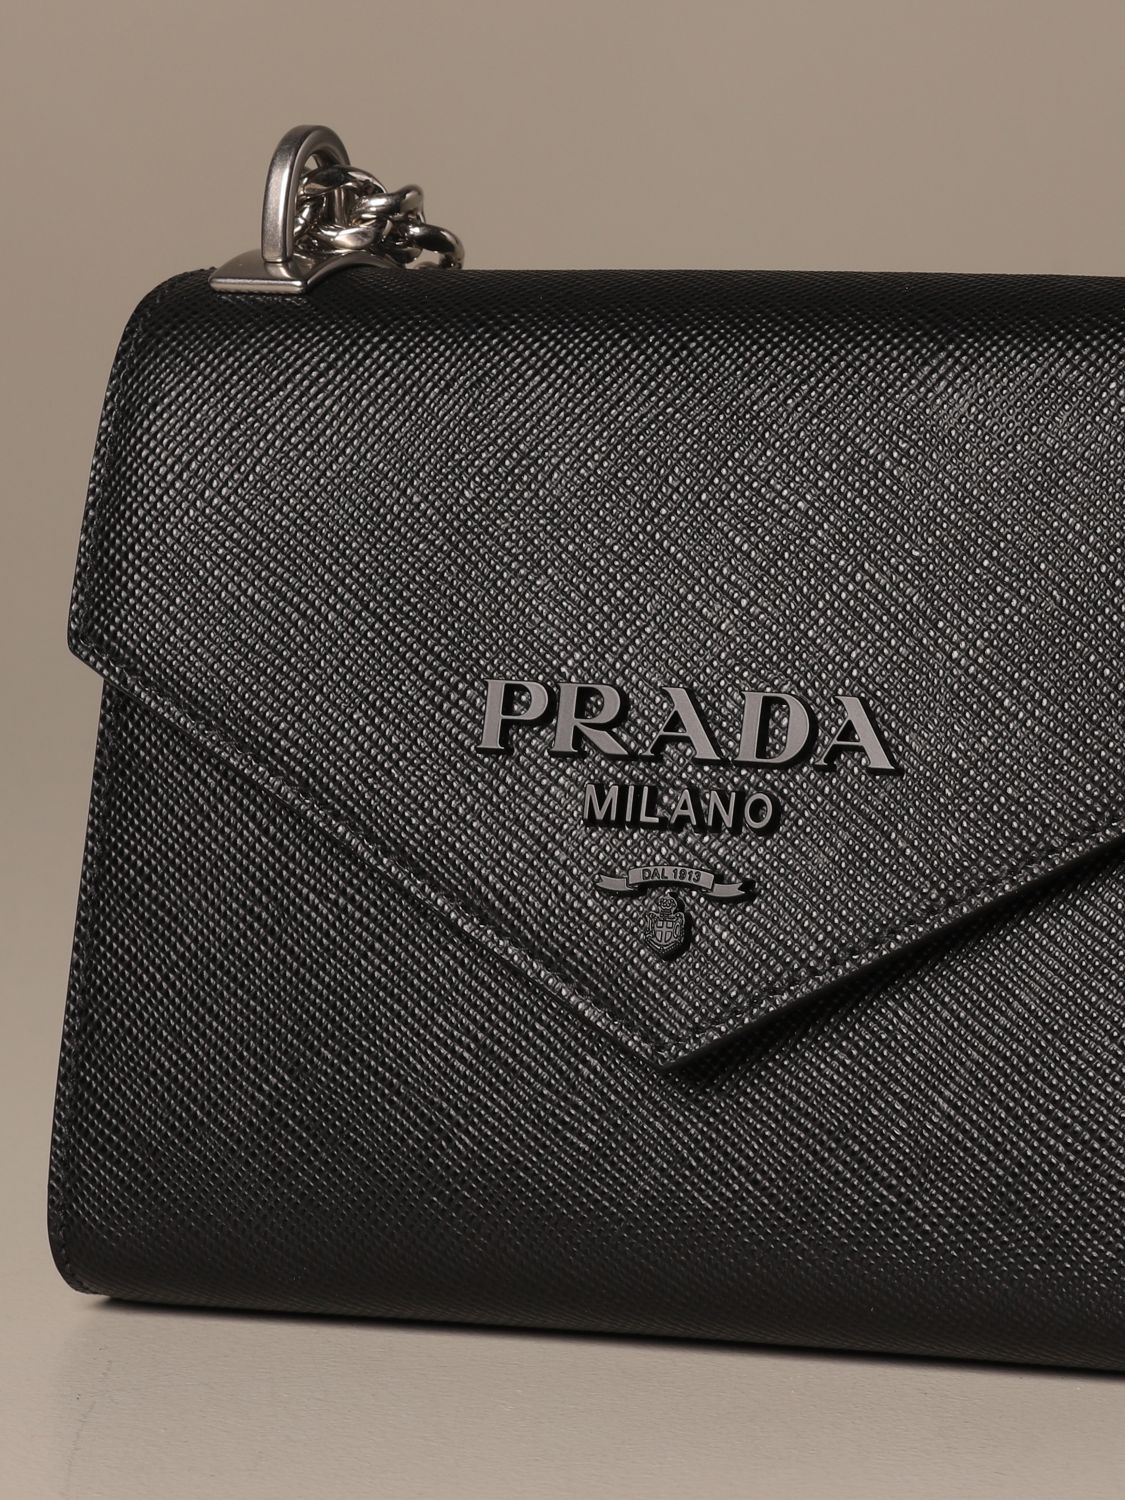 Shop PRADA Prada Monochrome Saffiano and leather bag  (1BD317_2ERX_F02TG_V_3O3, 1BD317_2ERX_F0009_V_3O3, 1BD317_2ERX_F0002_V_3O3)  by iNTheBAG